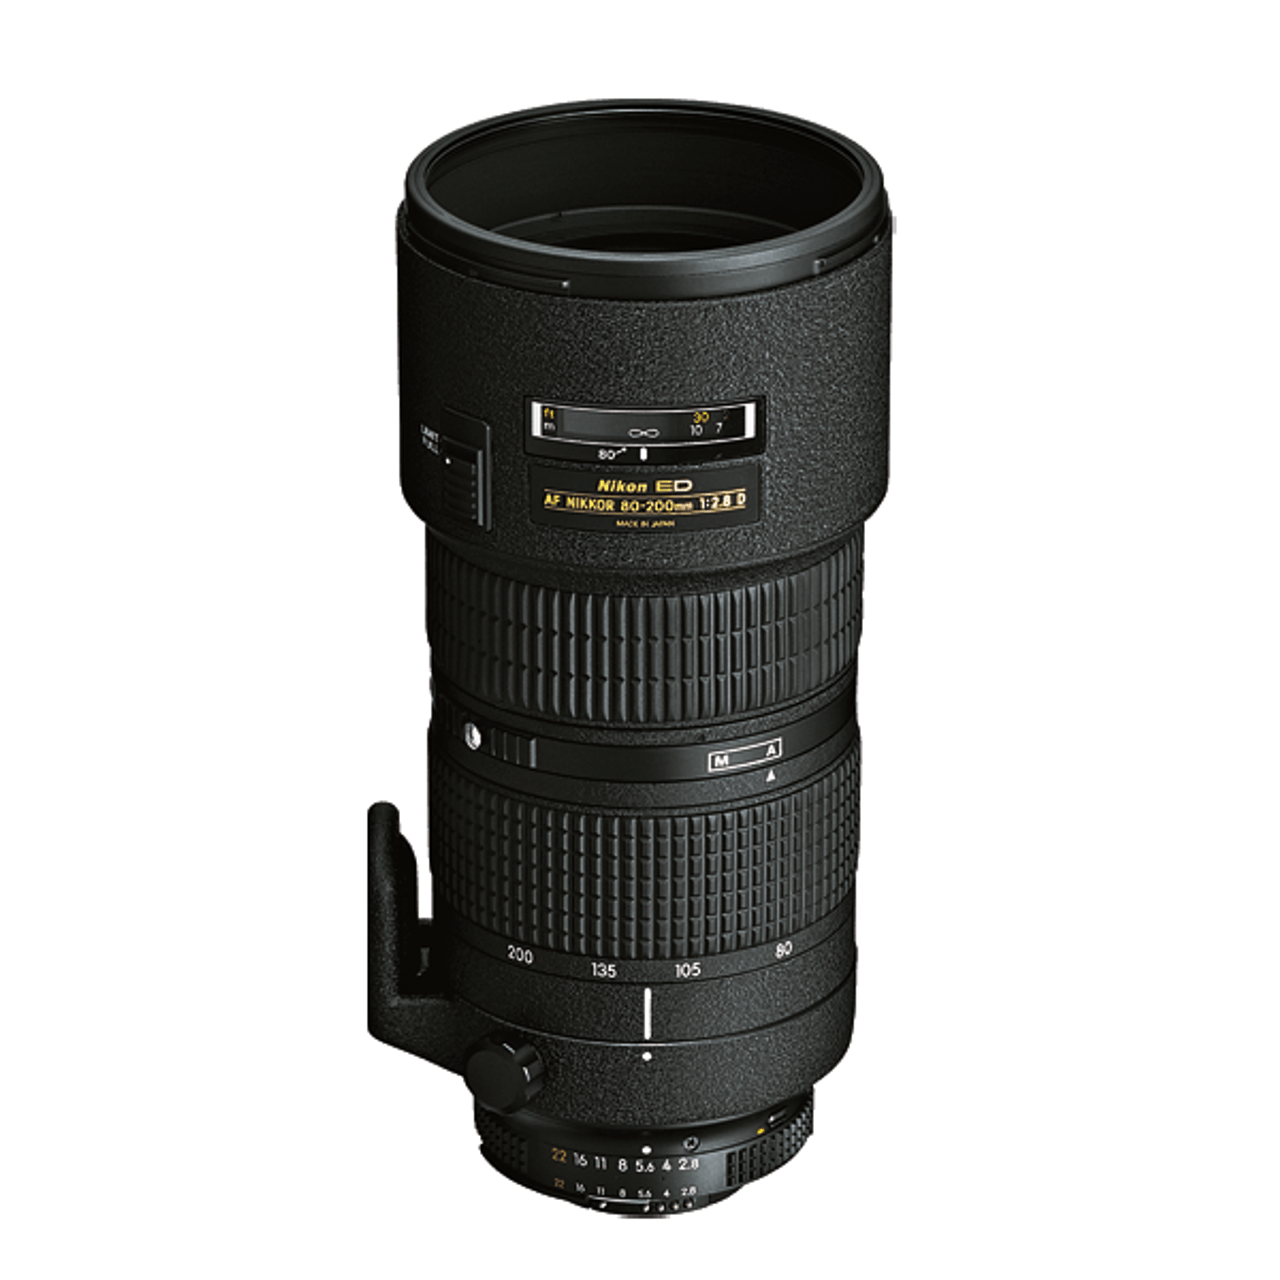 Nikon AF 80-200mm F2.8D ED Nikkor